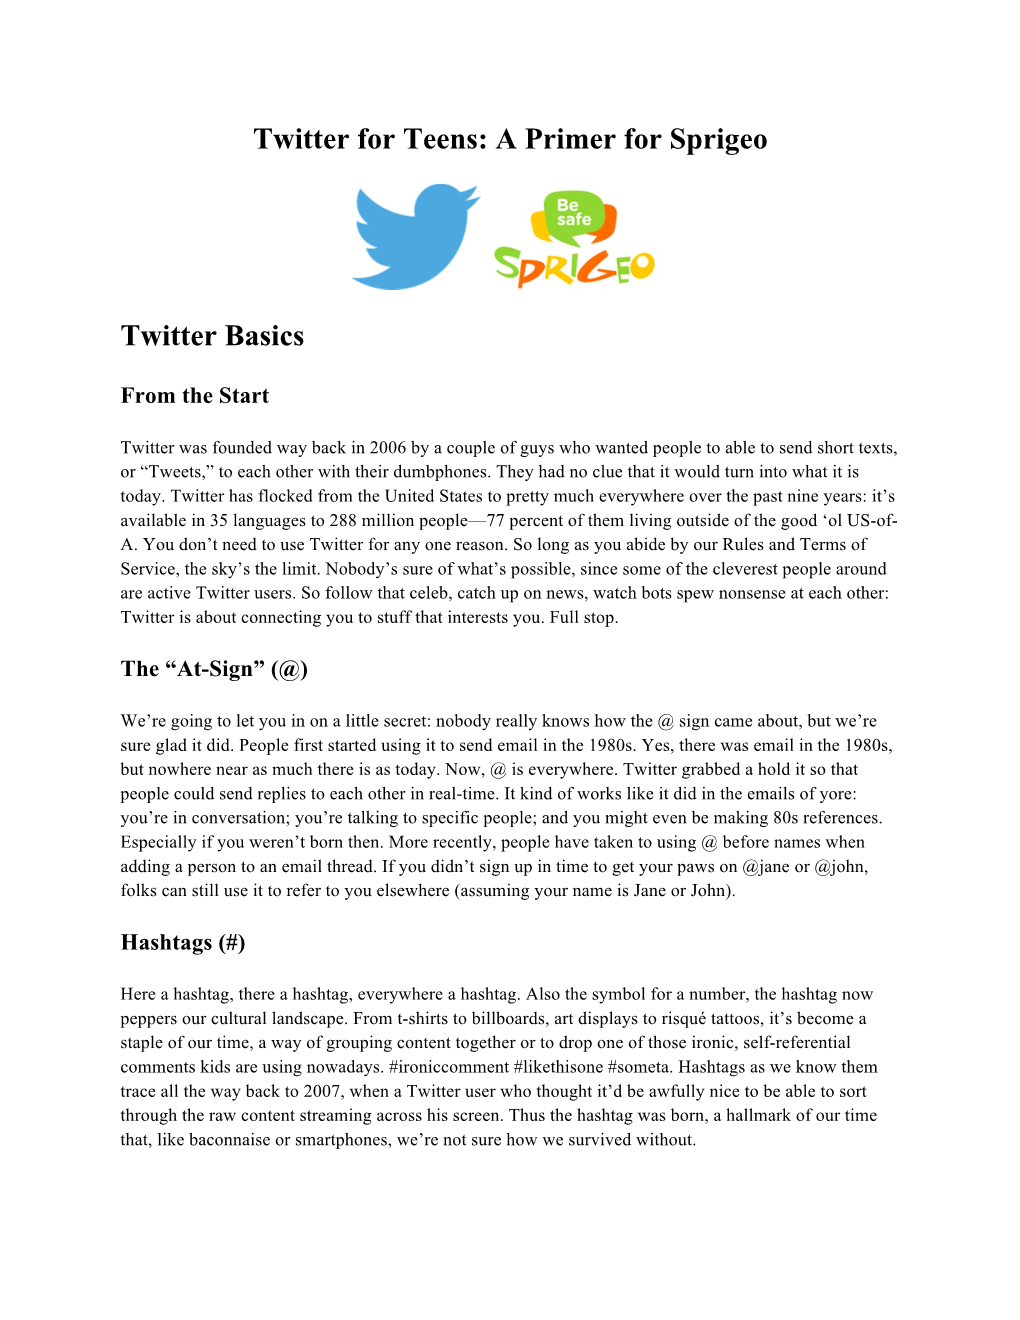 Twitter for Teens: a Primer for Sprigeo Twitter Basics